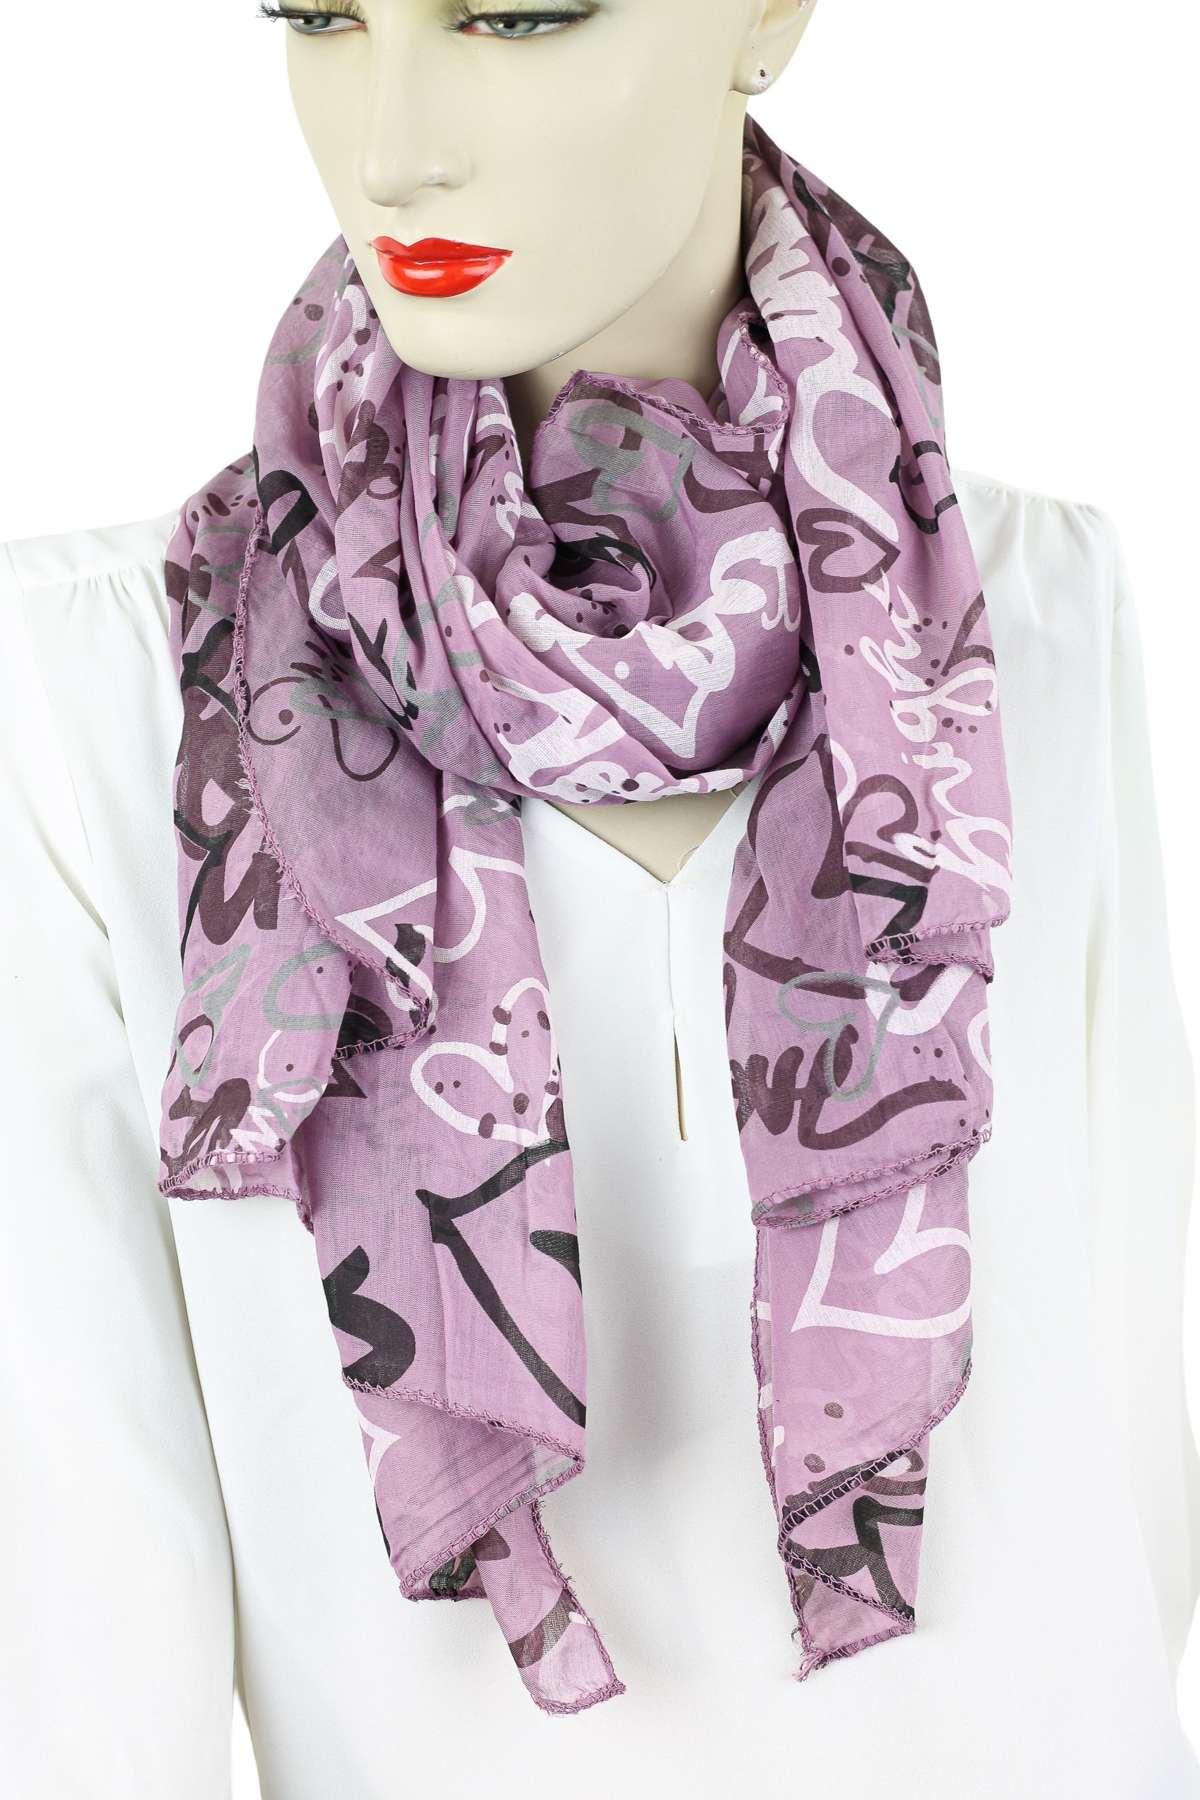 Модный шарф (1 штука), производство Италия, с содержанием шелка.